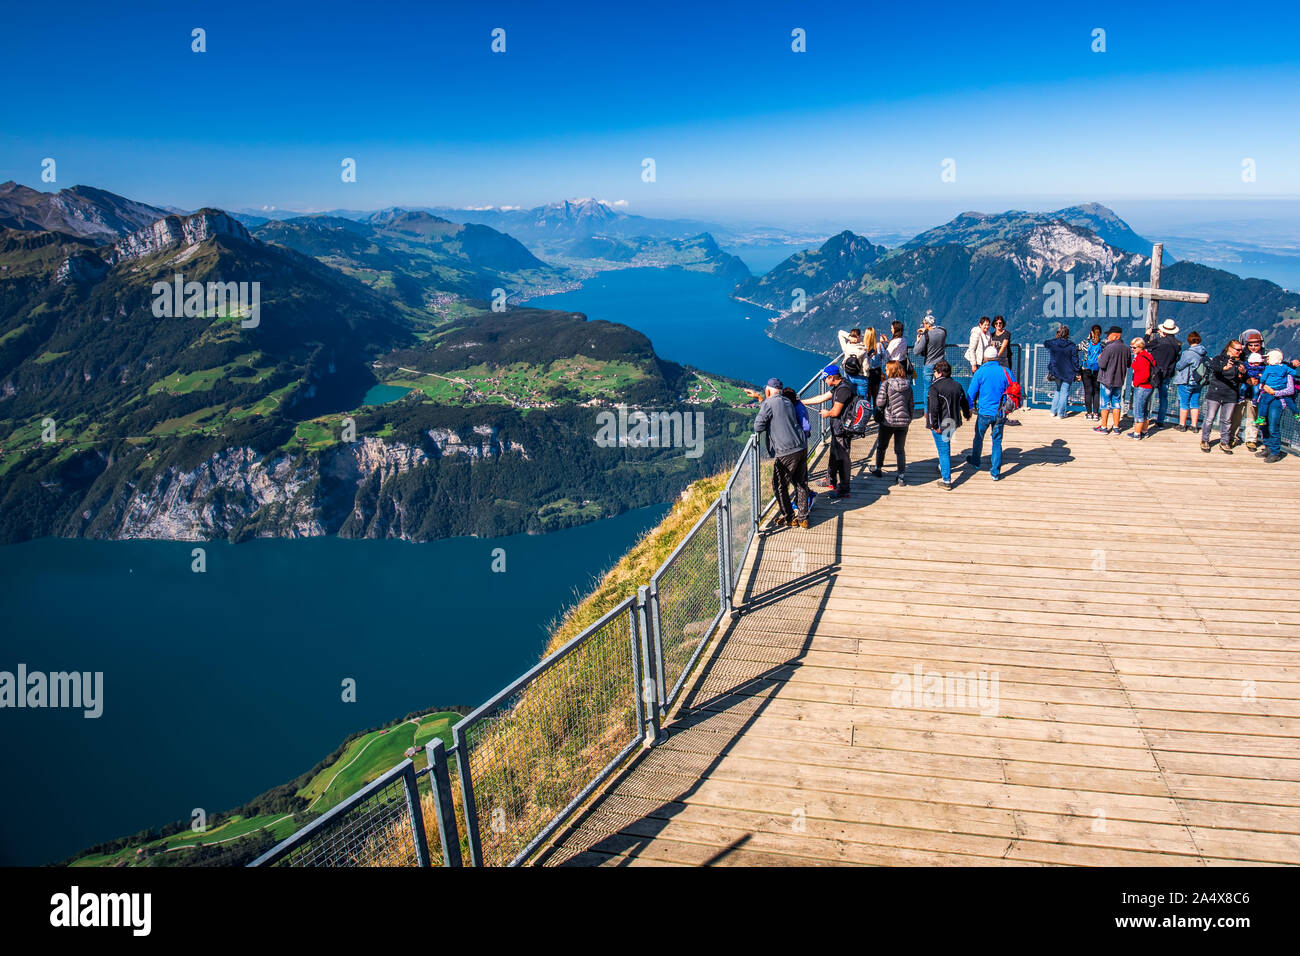 FRONALPSTOCK, SUISSE - Août 2019 - vue fantastique sur le lac de Lucerne avec Rigi Pilatus et montagnes, ville de Zürich, Suisse, Fronalpstock Banque D'Images